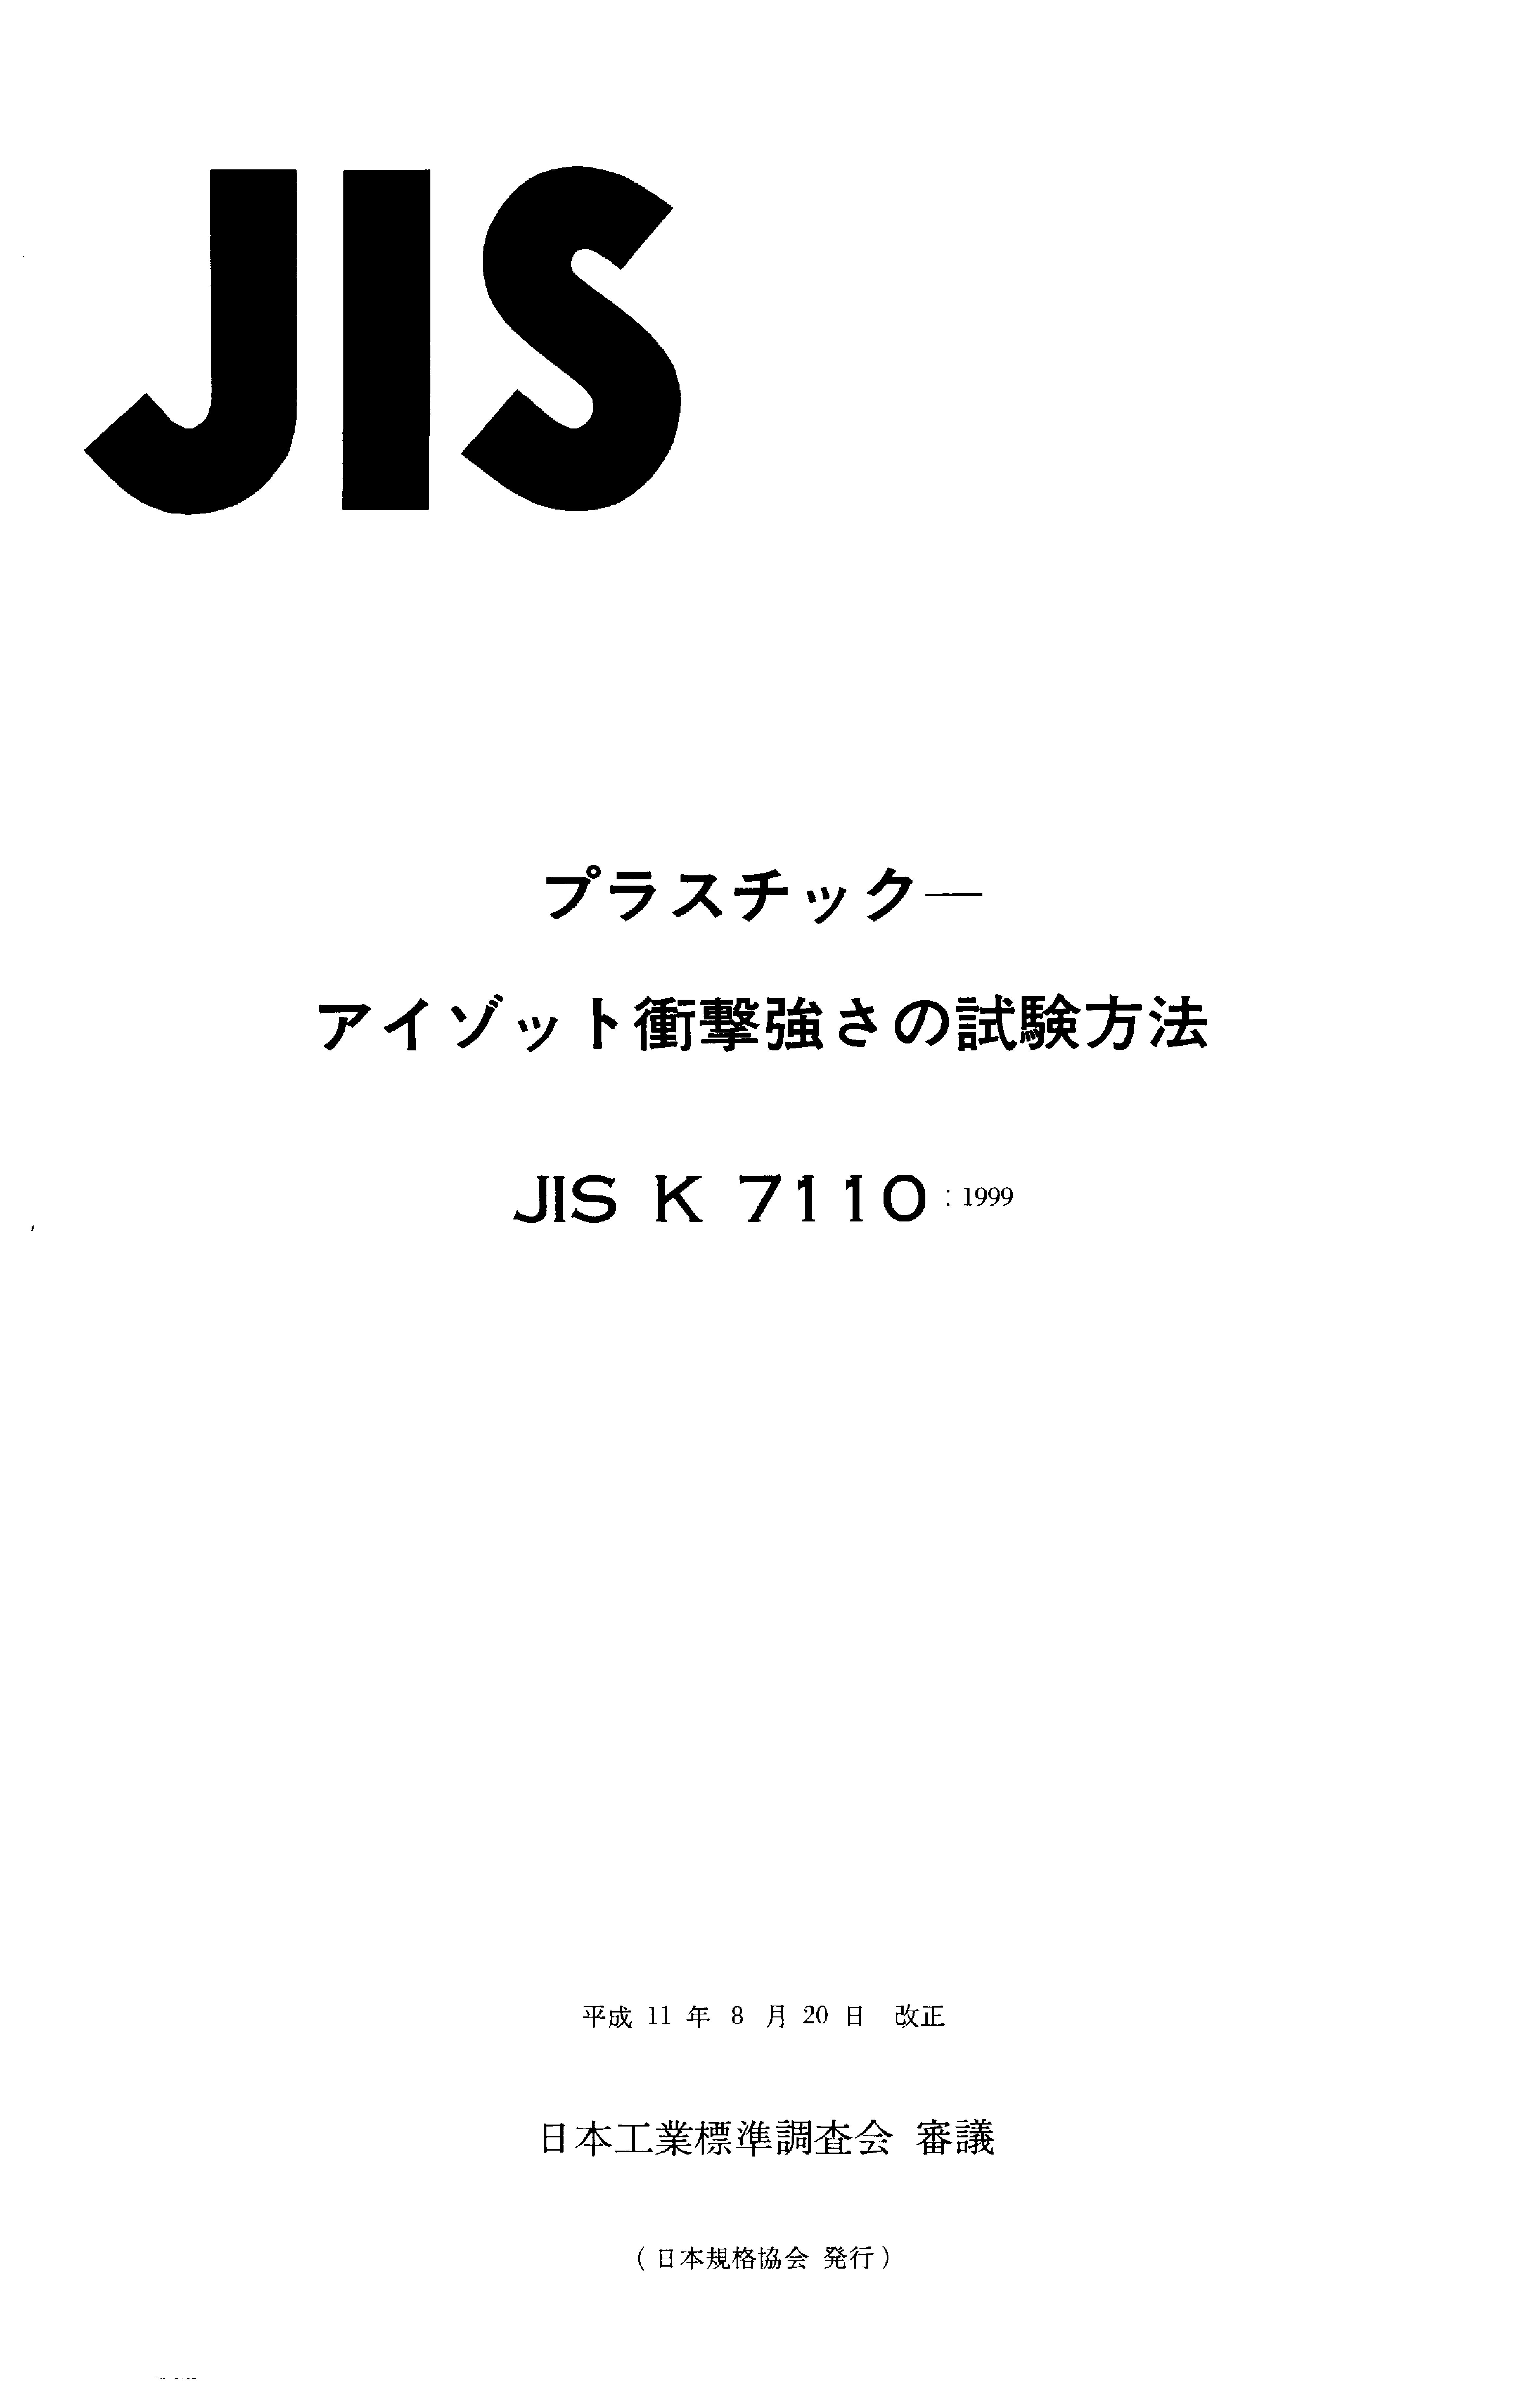 JIS K 7110:1999